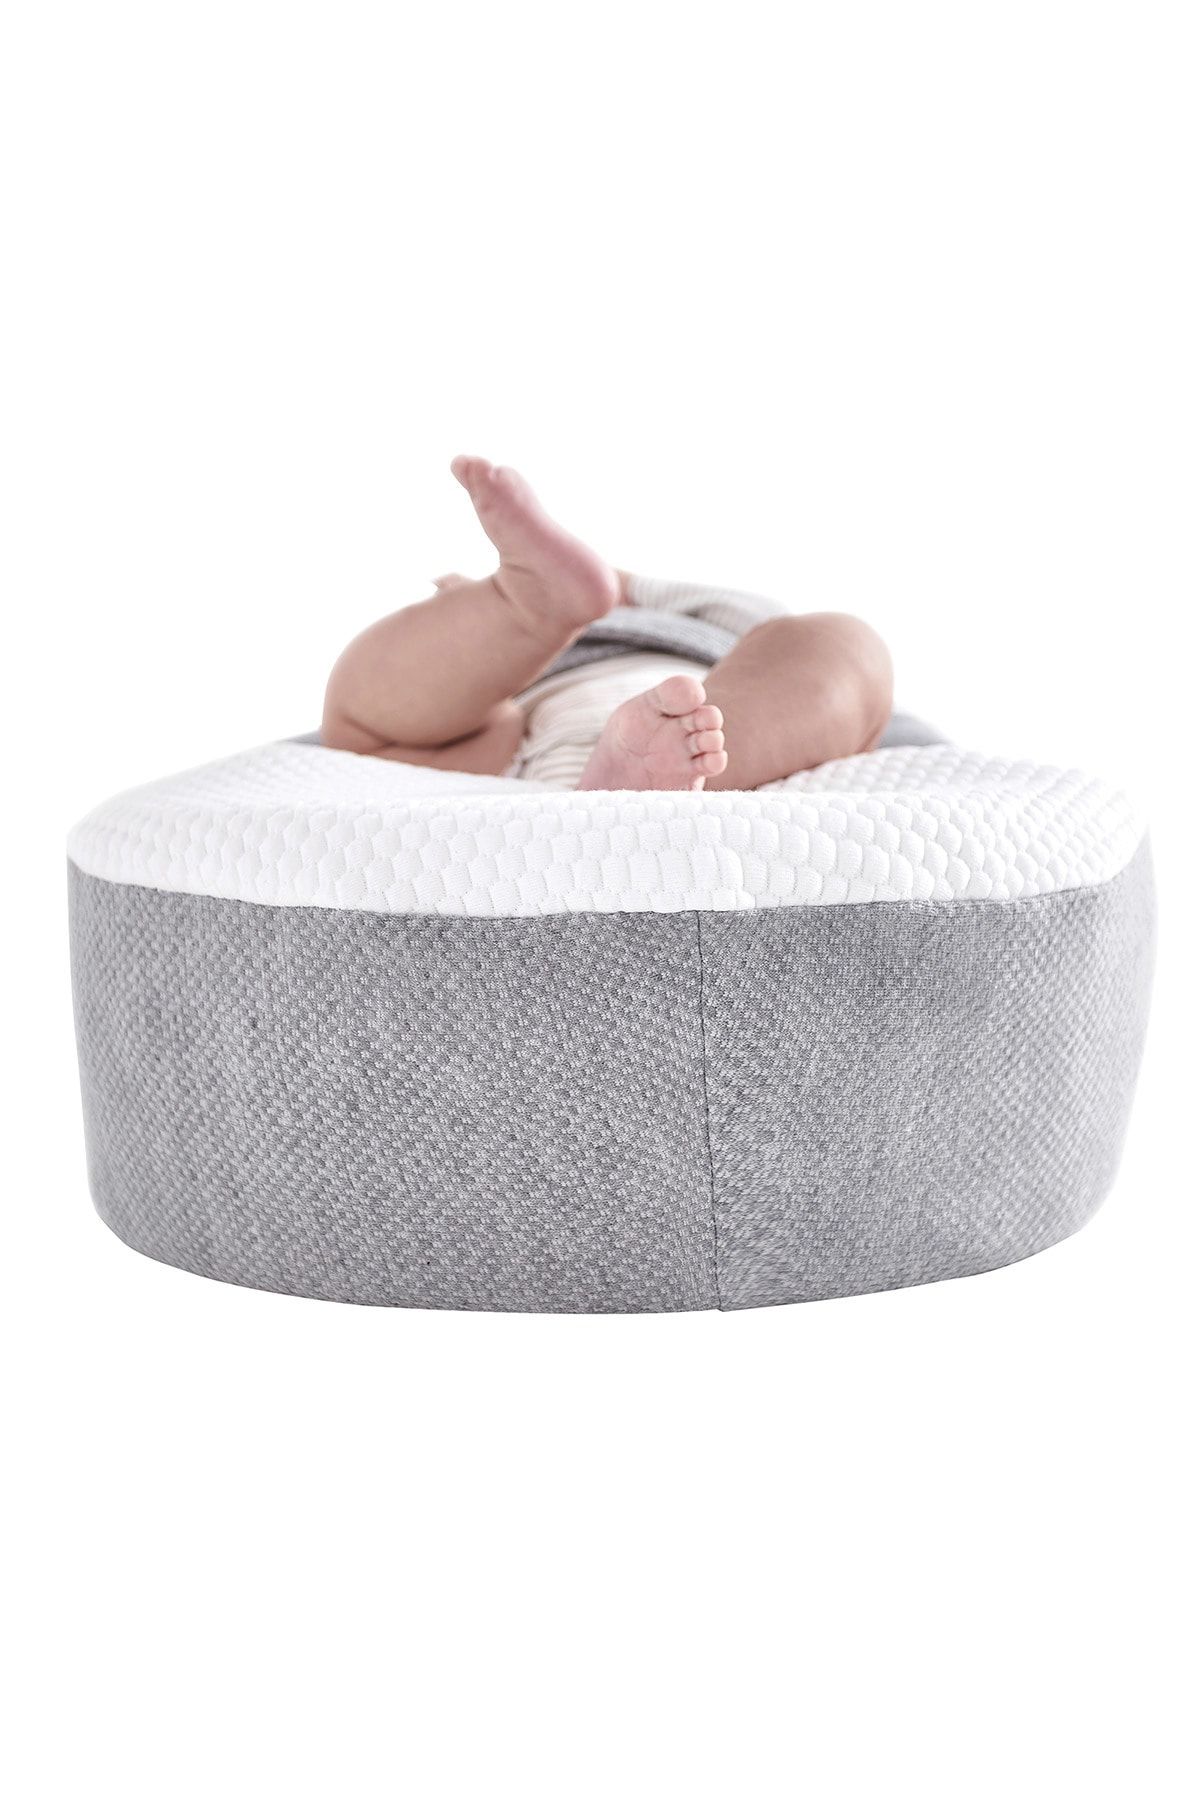 Yataş Bedding Unisex Bebek BeyazGri Yatak Juno® Fiyatı, Yorumları